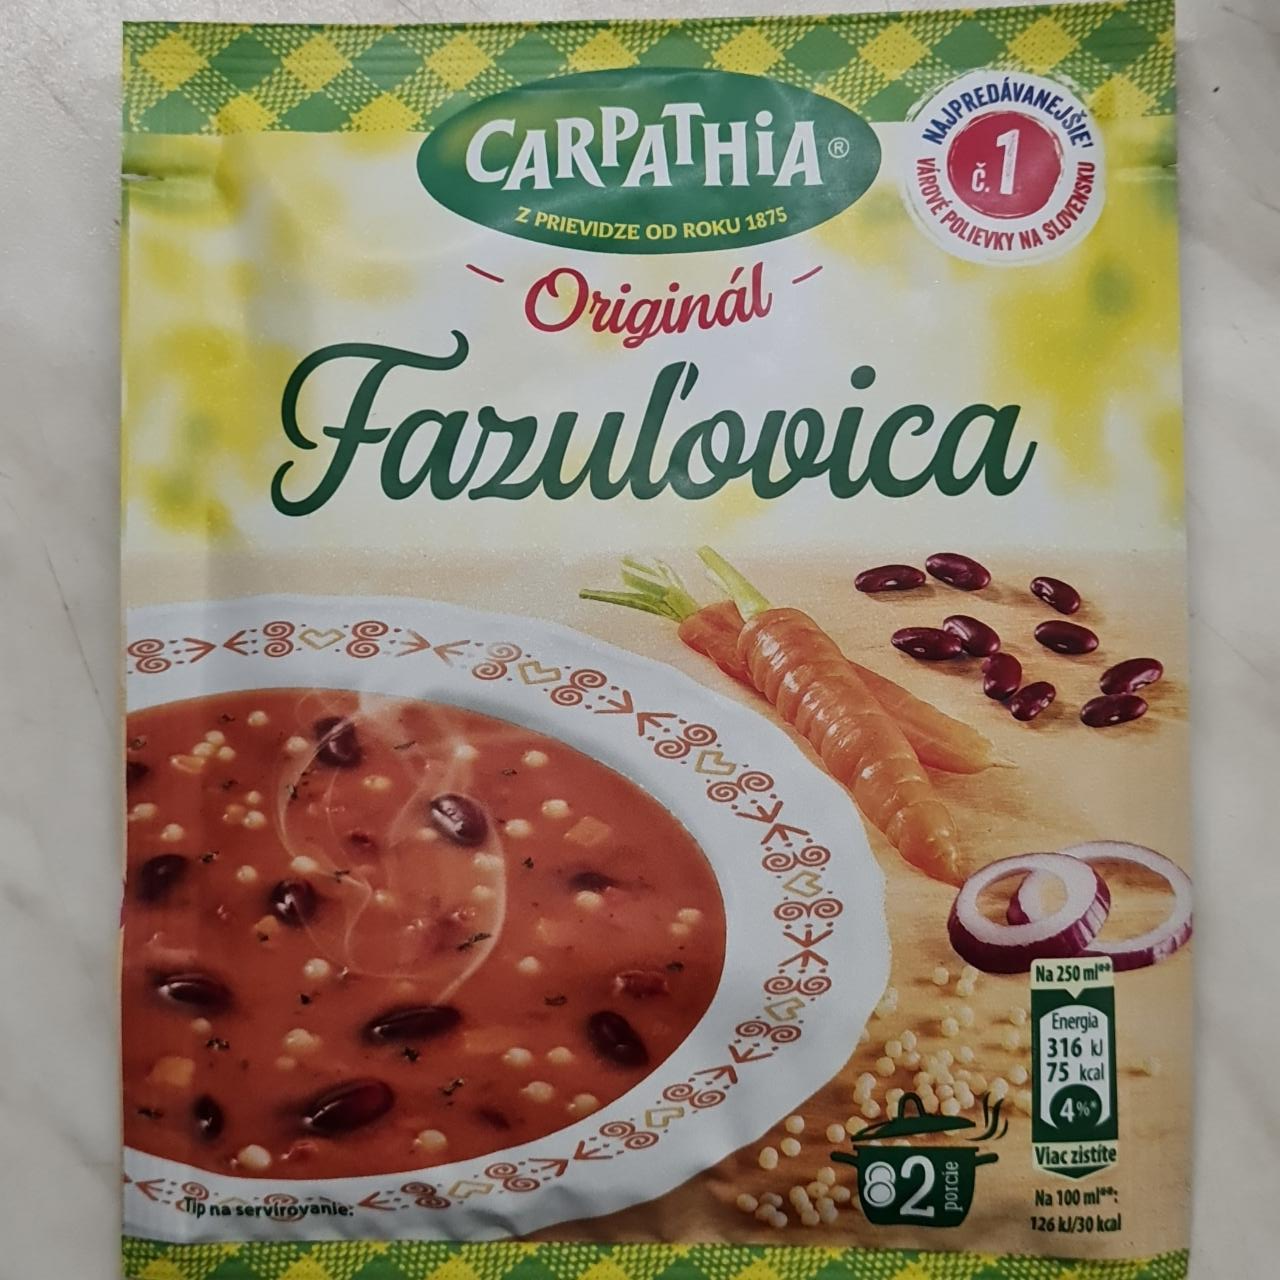 Fotografie - Originál Fazuľovica Carpathia